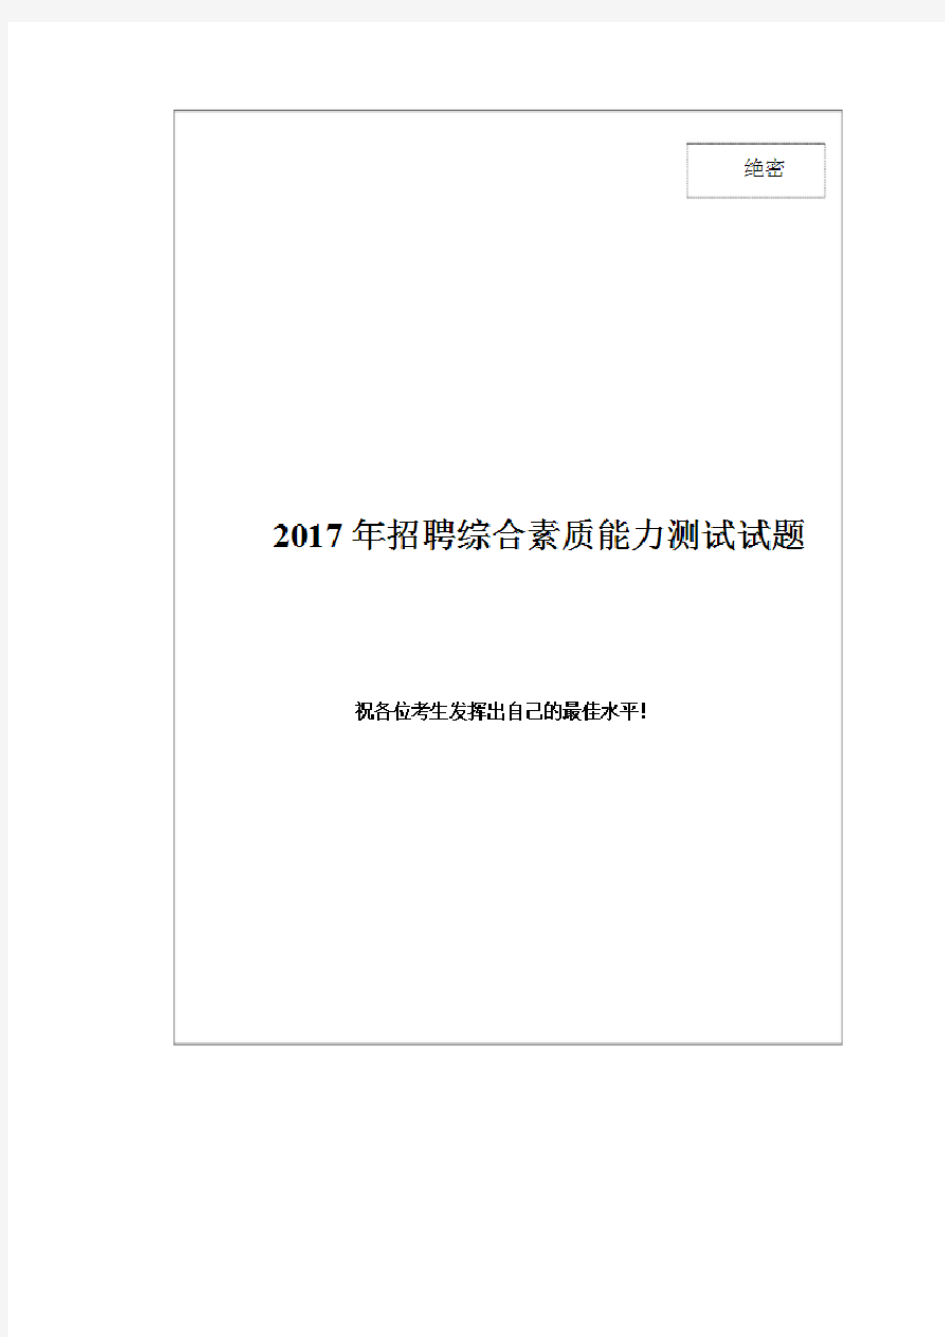 2017年度中国石油化工集团校园招聘考试